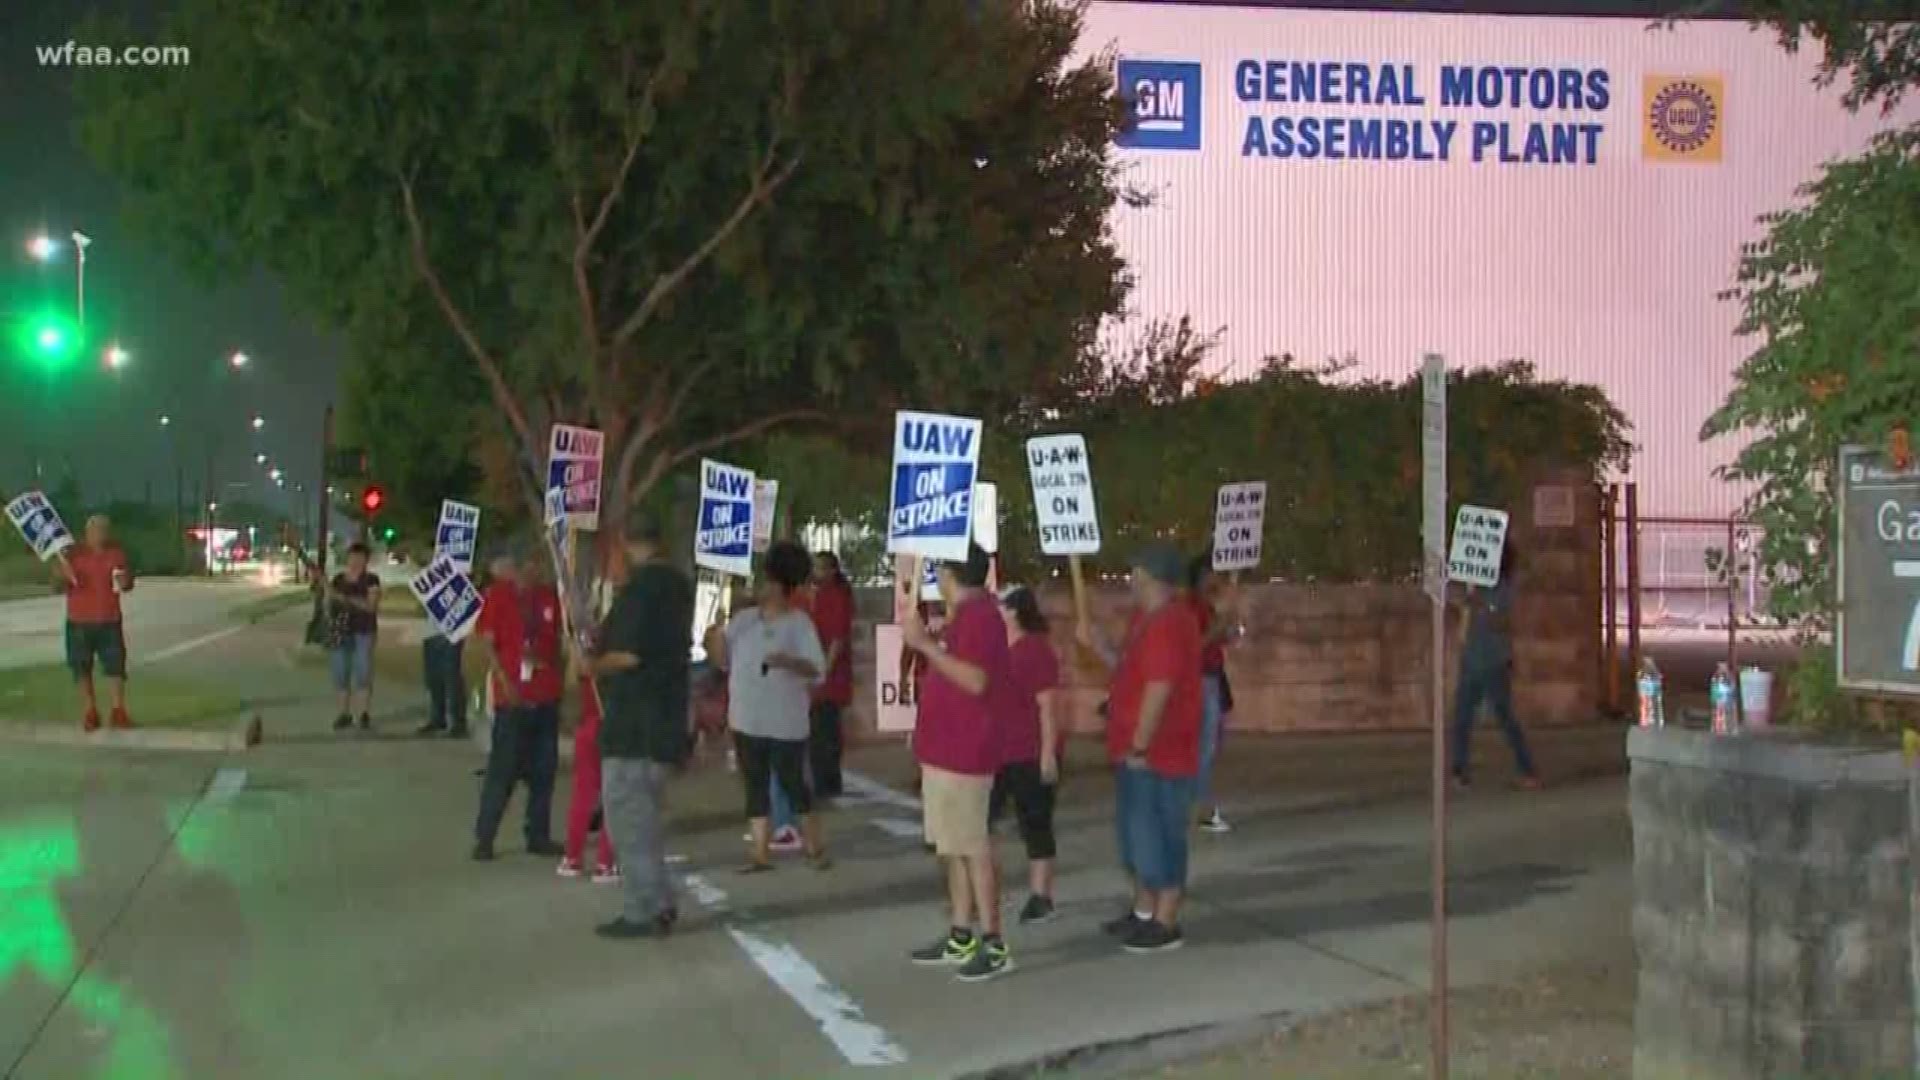 GM workers on strike in Arlington